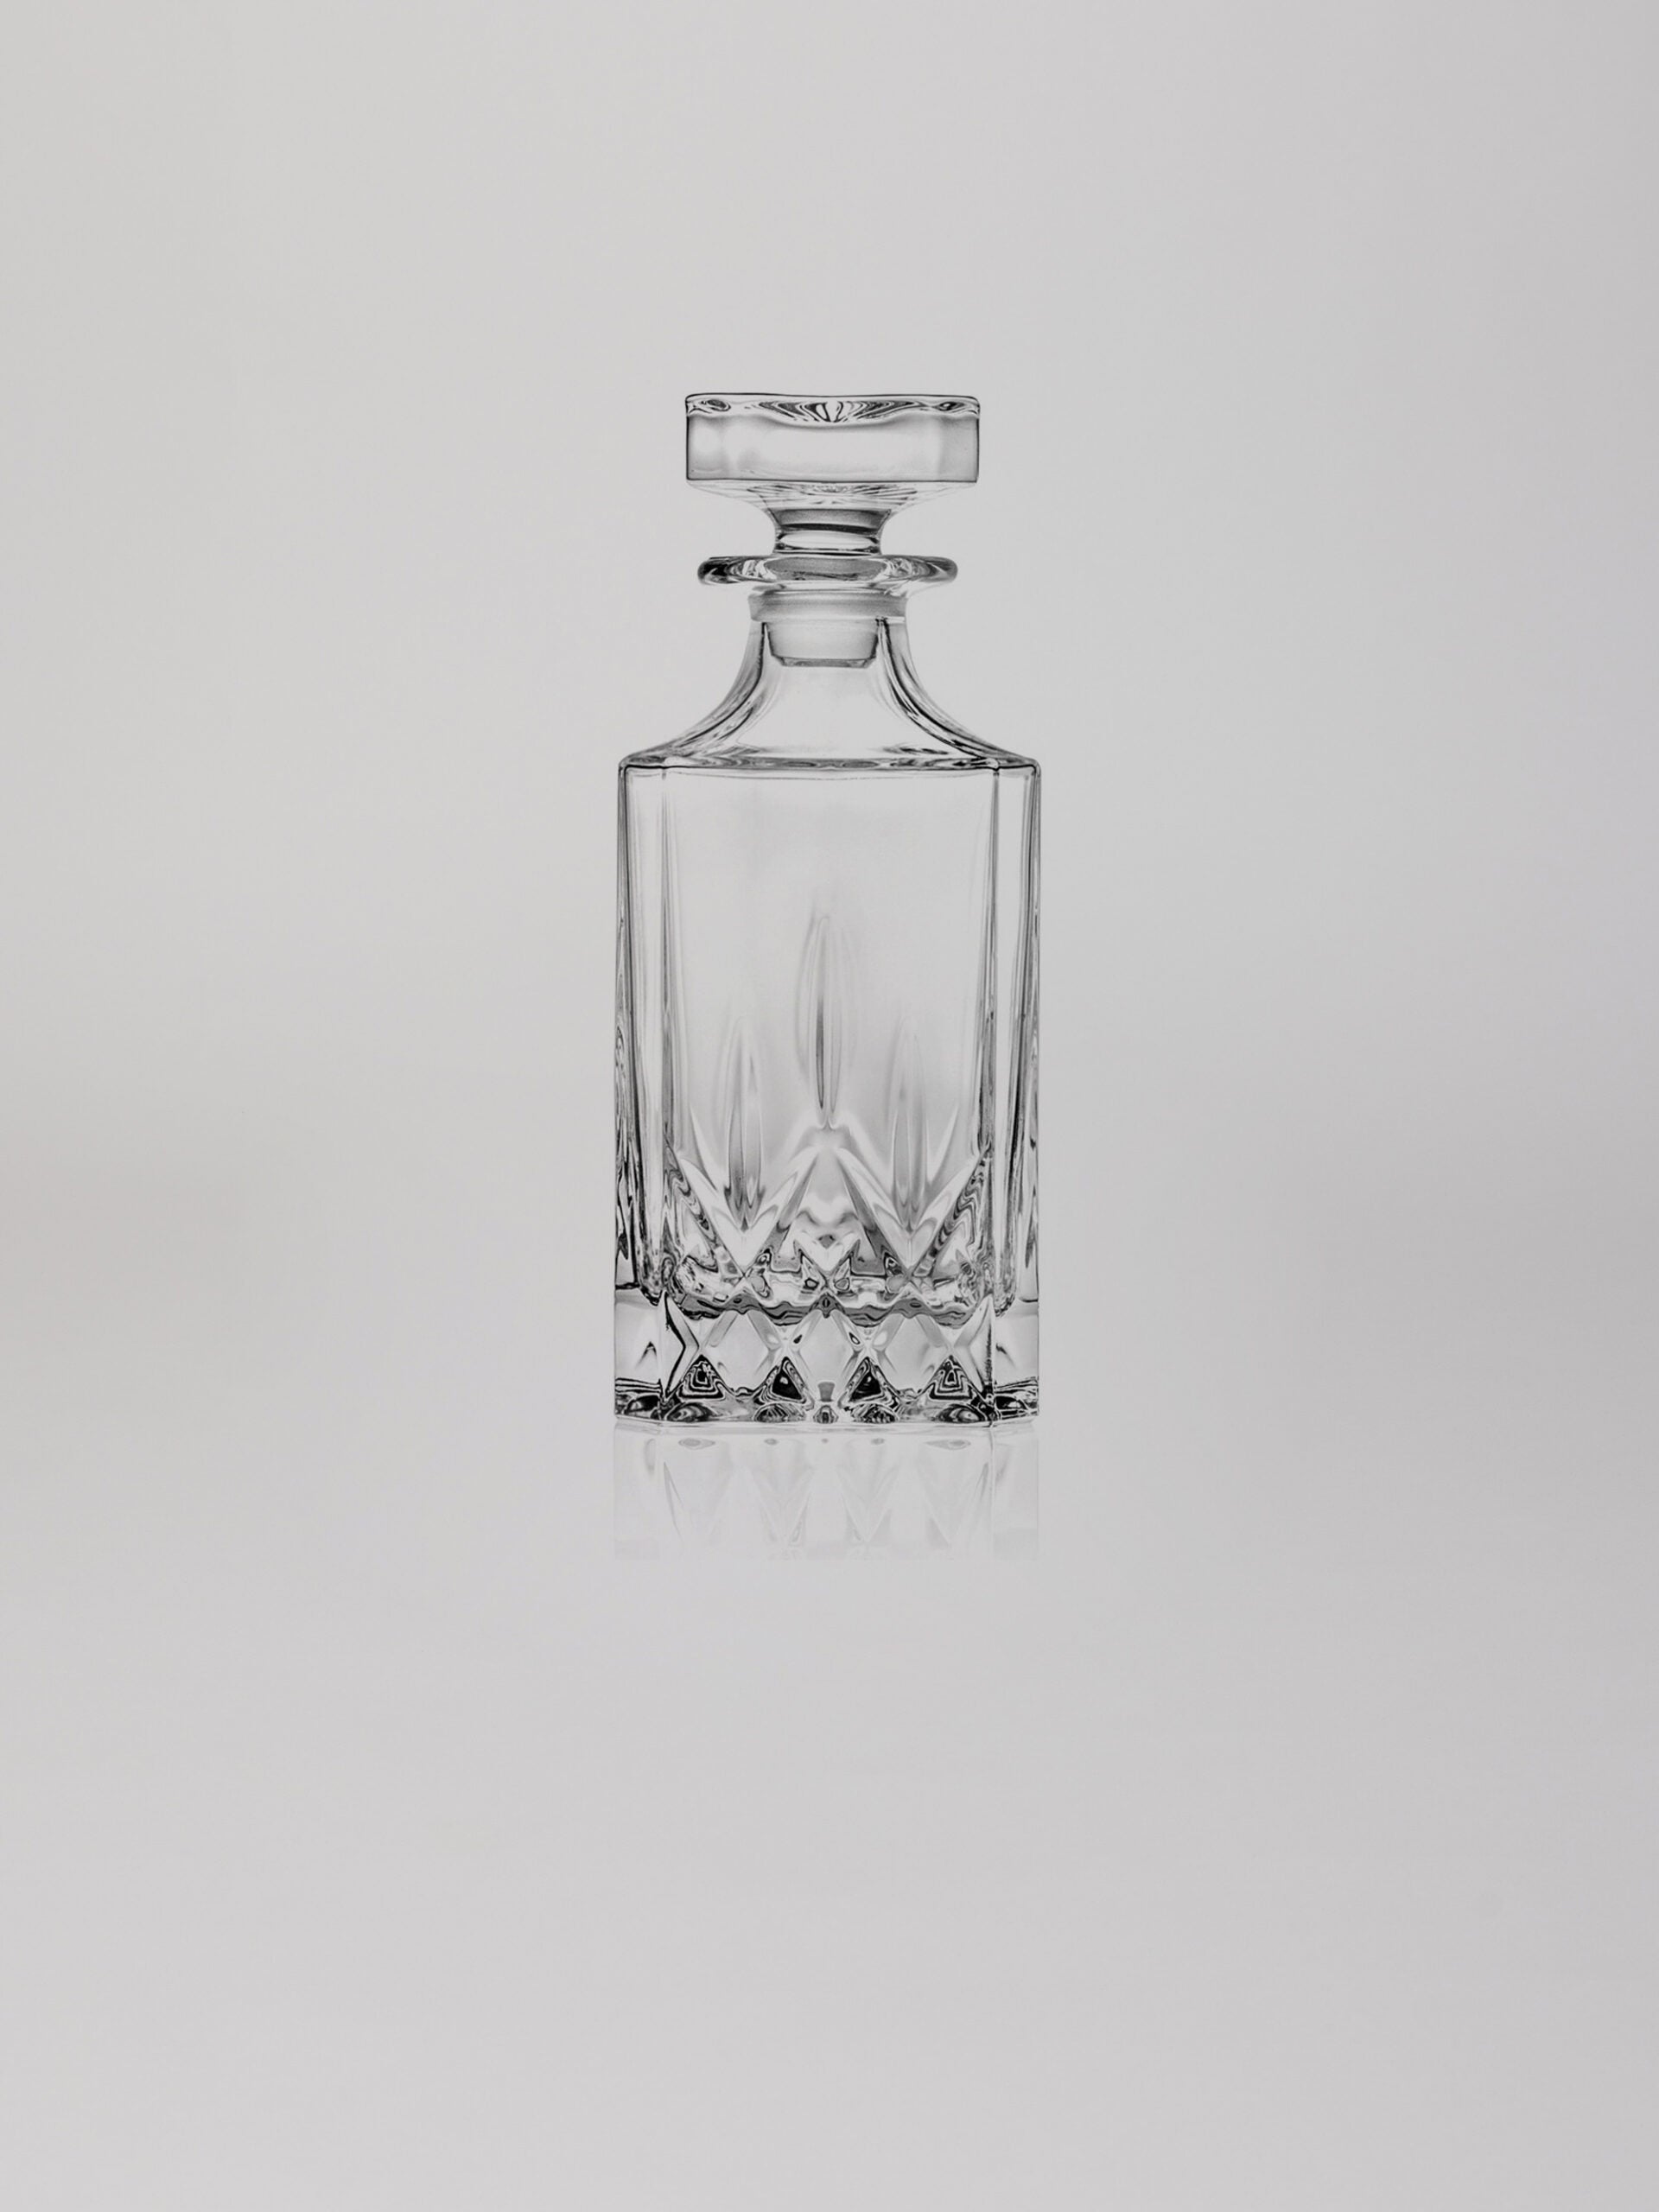  דקנטר לוויסקי מזכוכית קריסטל מדגם אופרה על רקע אפור בהיר בוהק